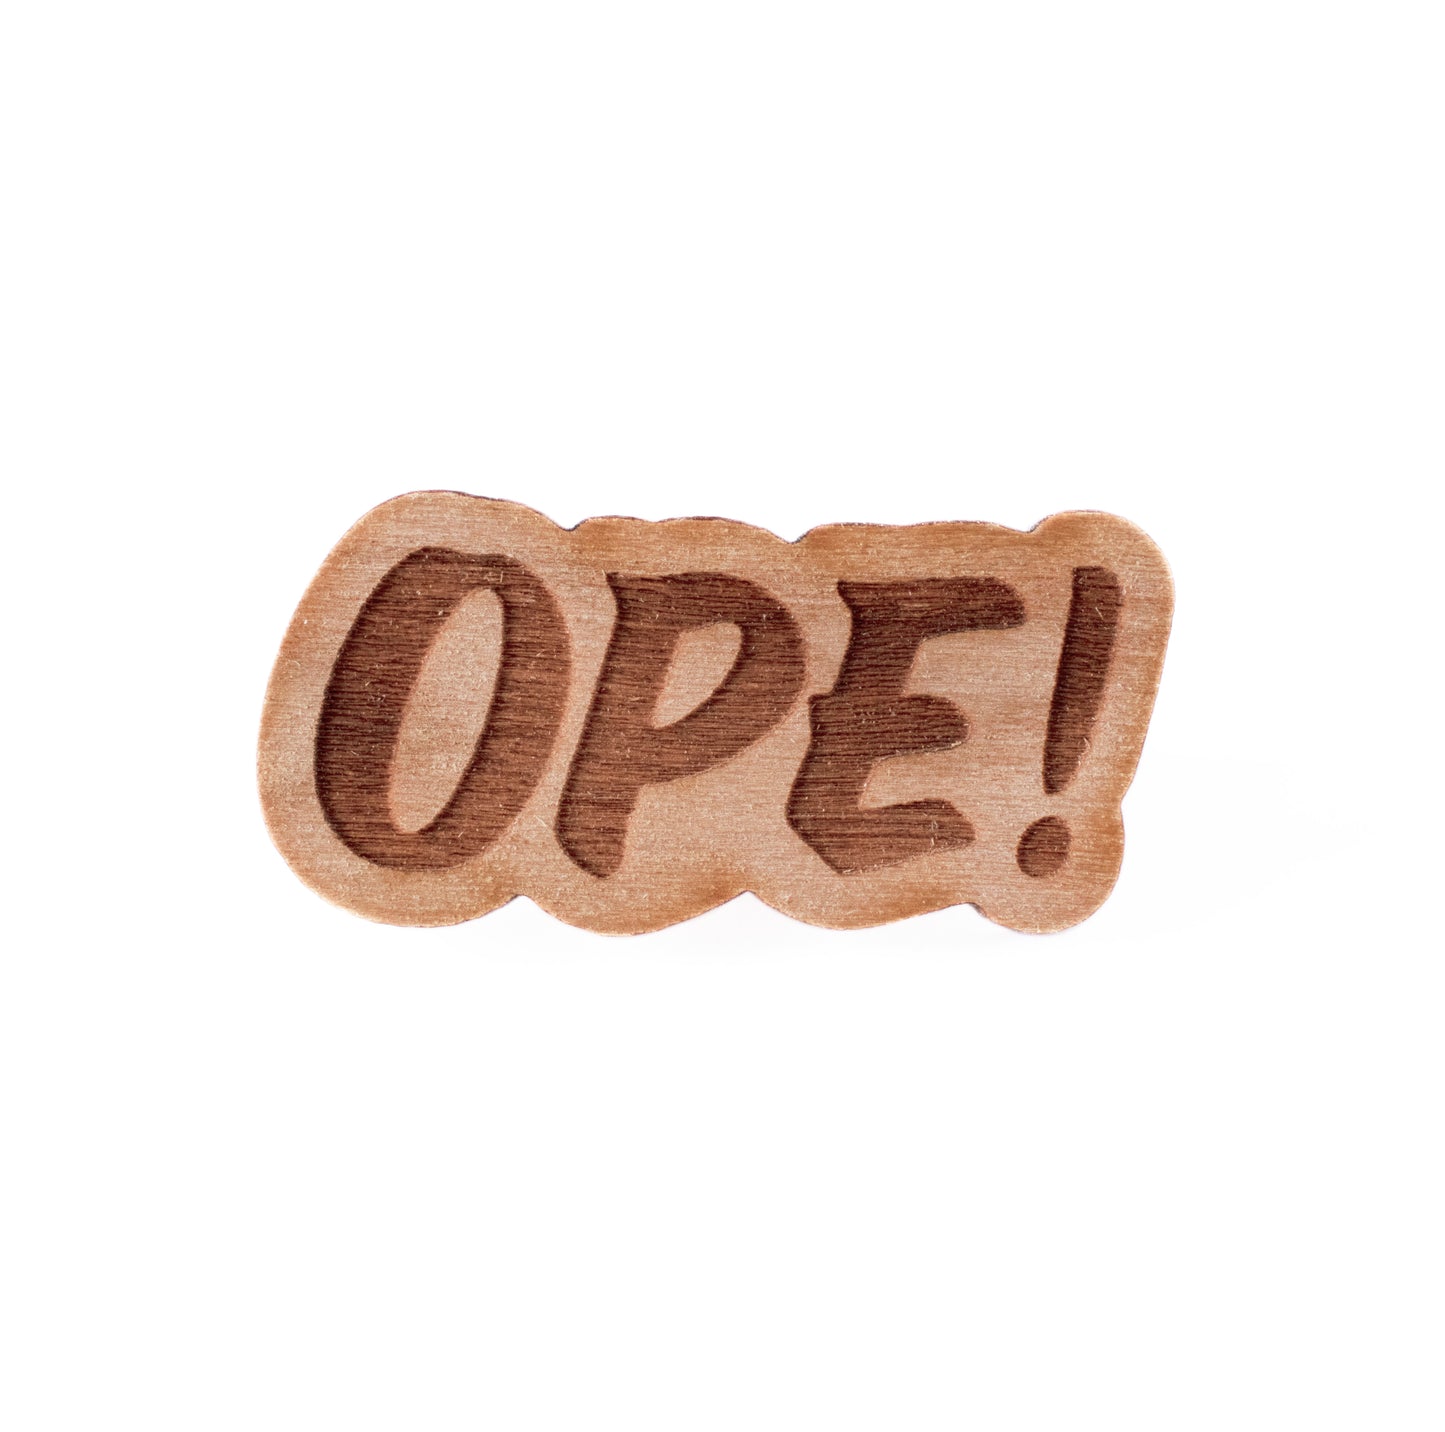 Ope Wood Pin